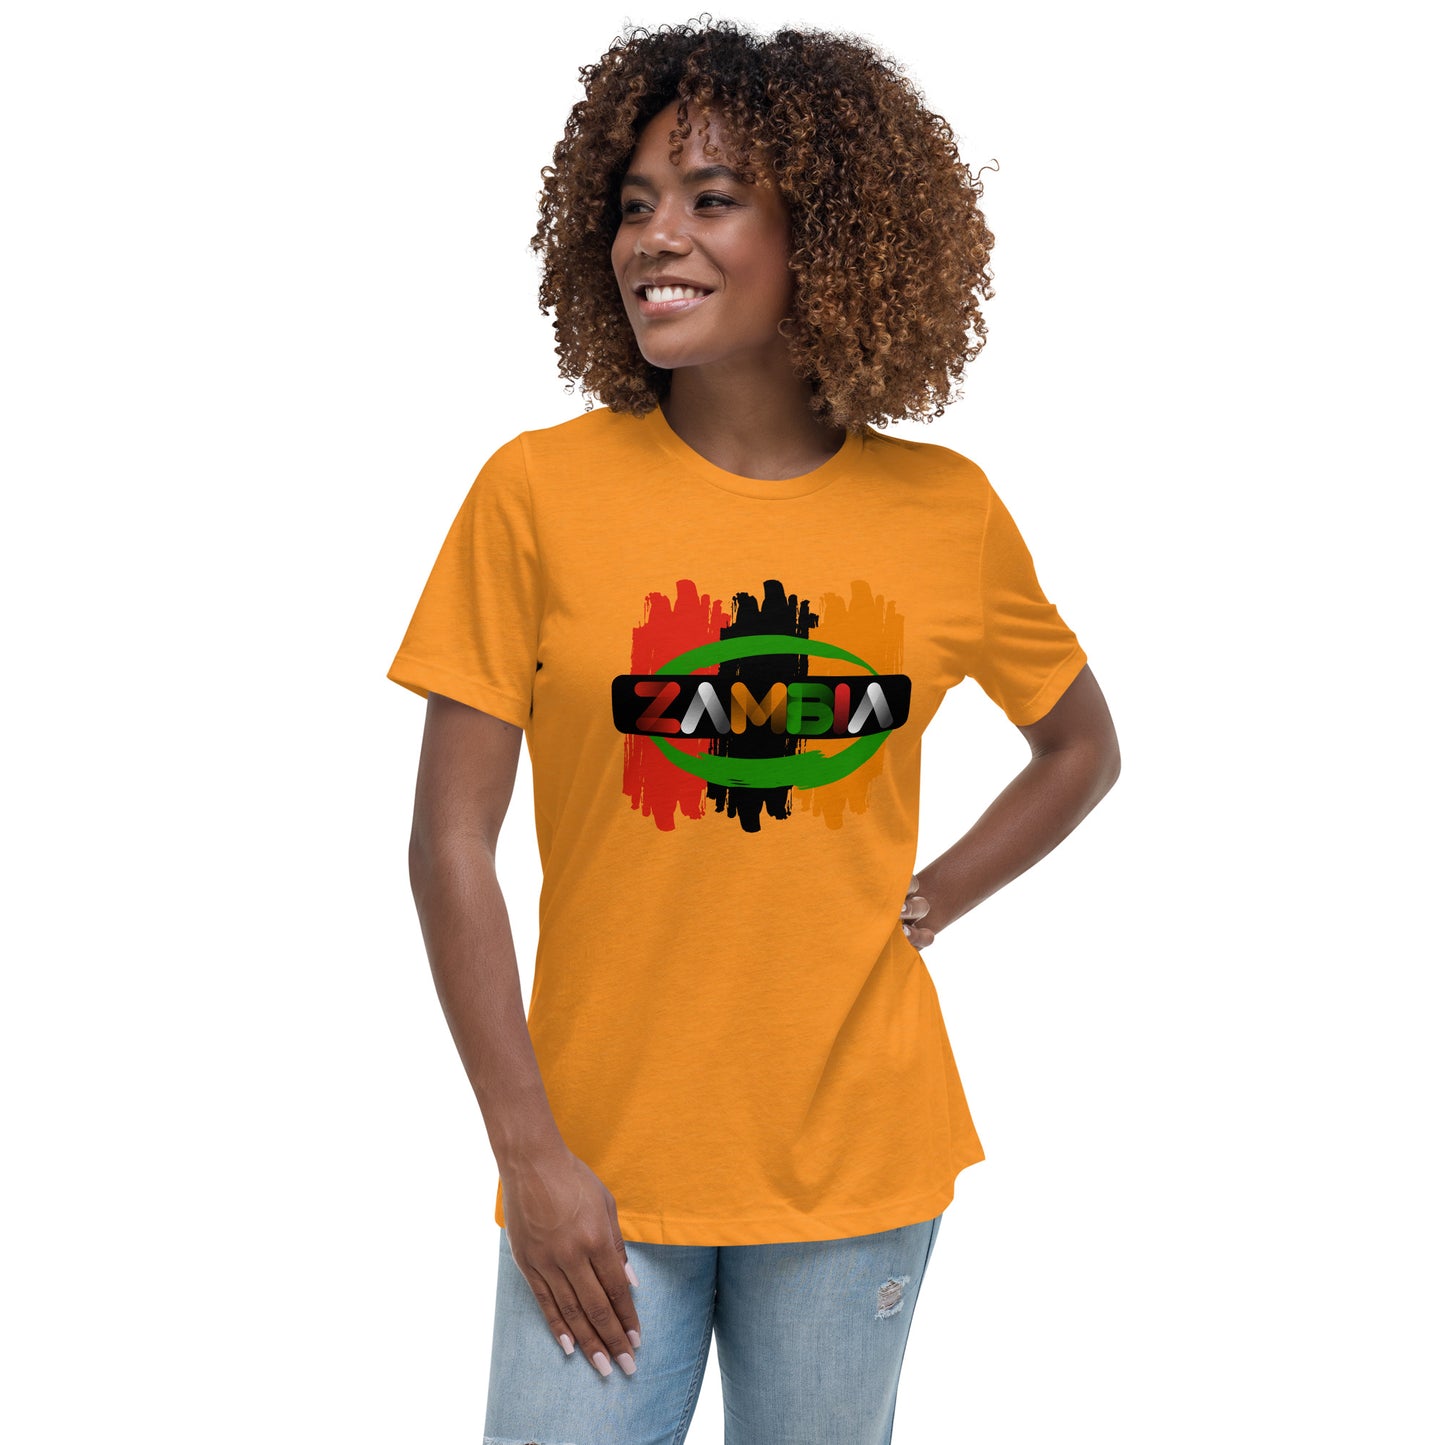 Women's Relaxed Zambia T-Shirt